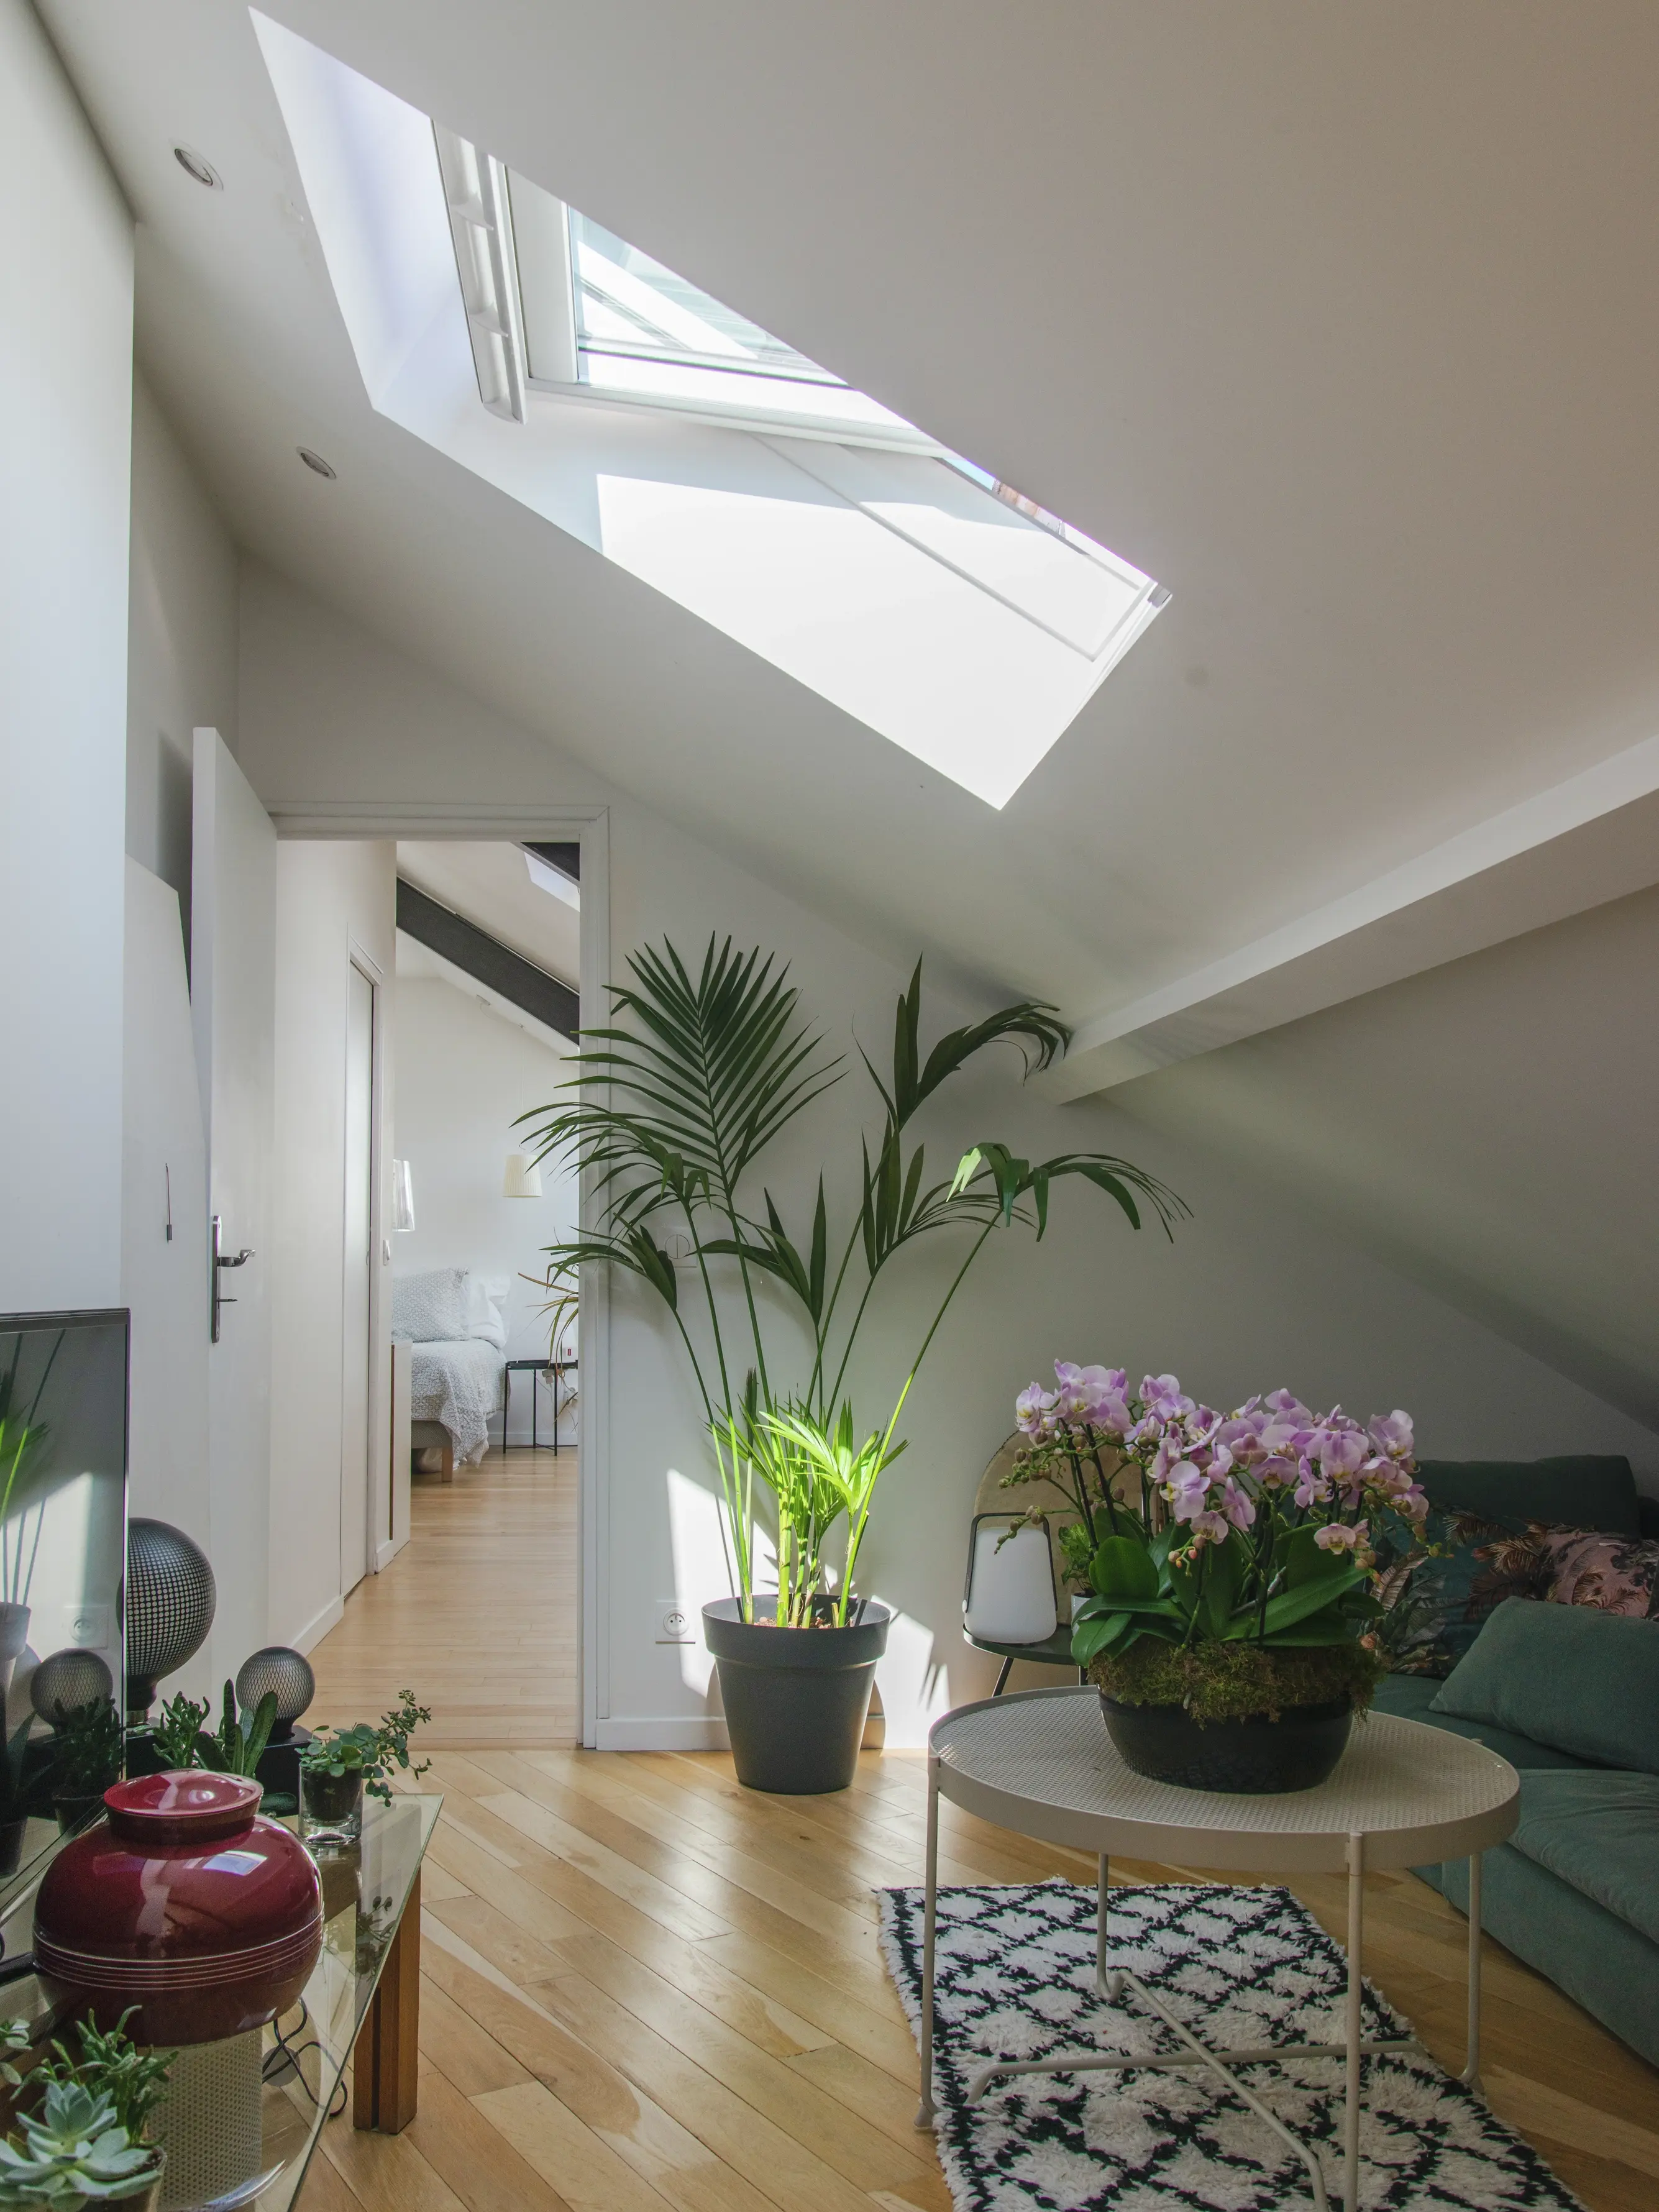 Salon de comble avec fenêtre de toit VELUX, parquet en bois dur et plantes vertes.